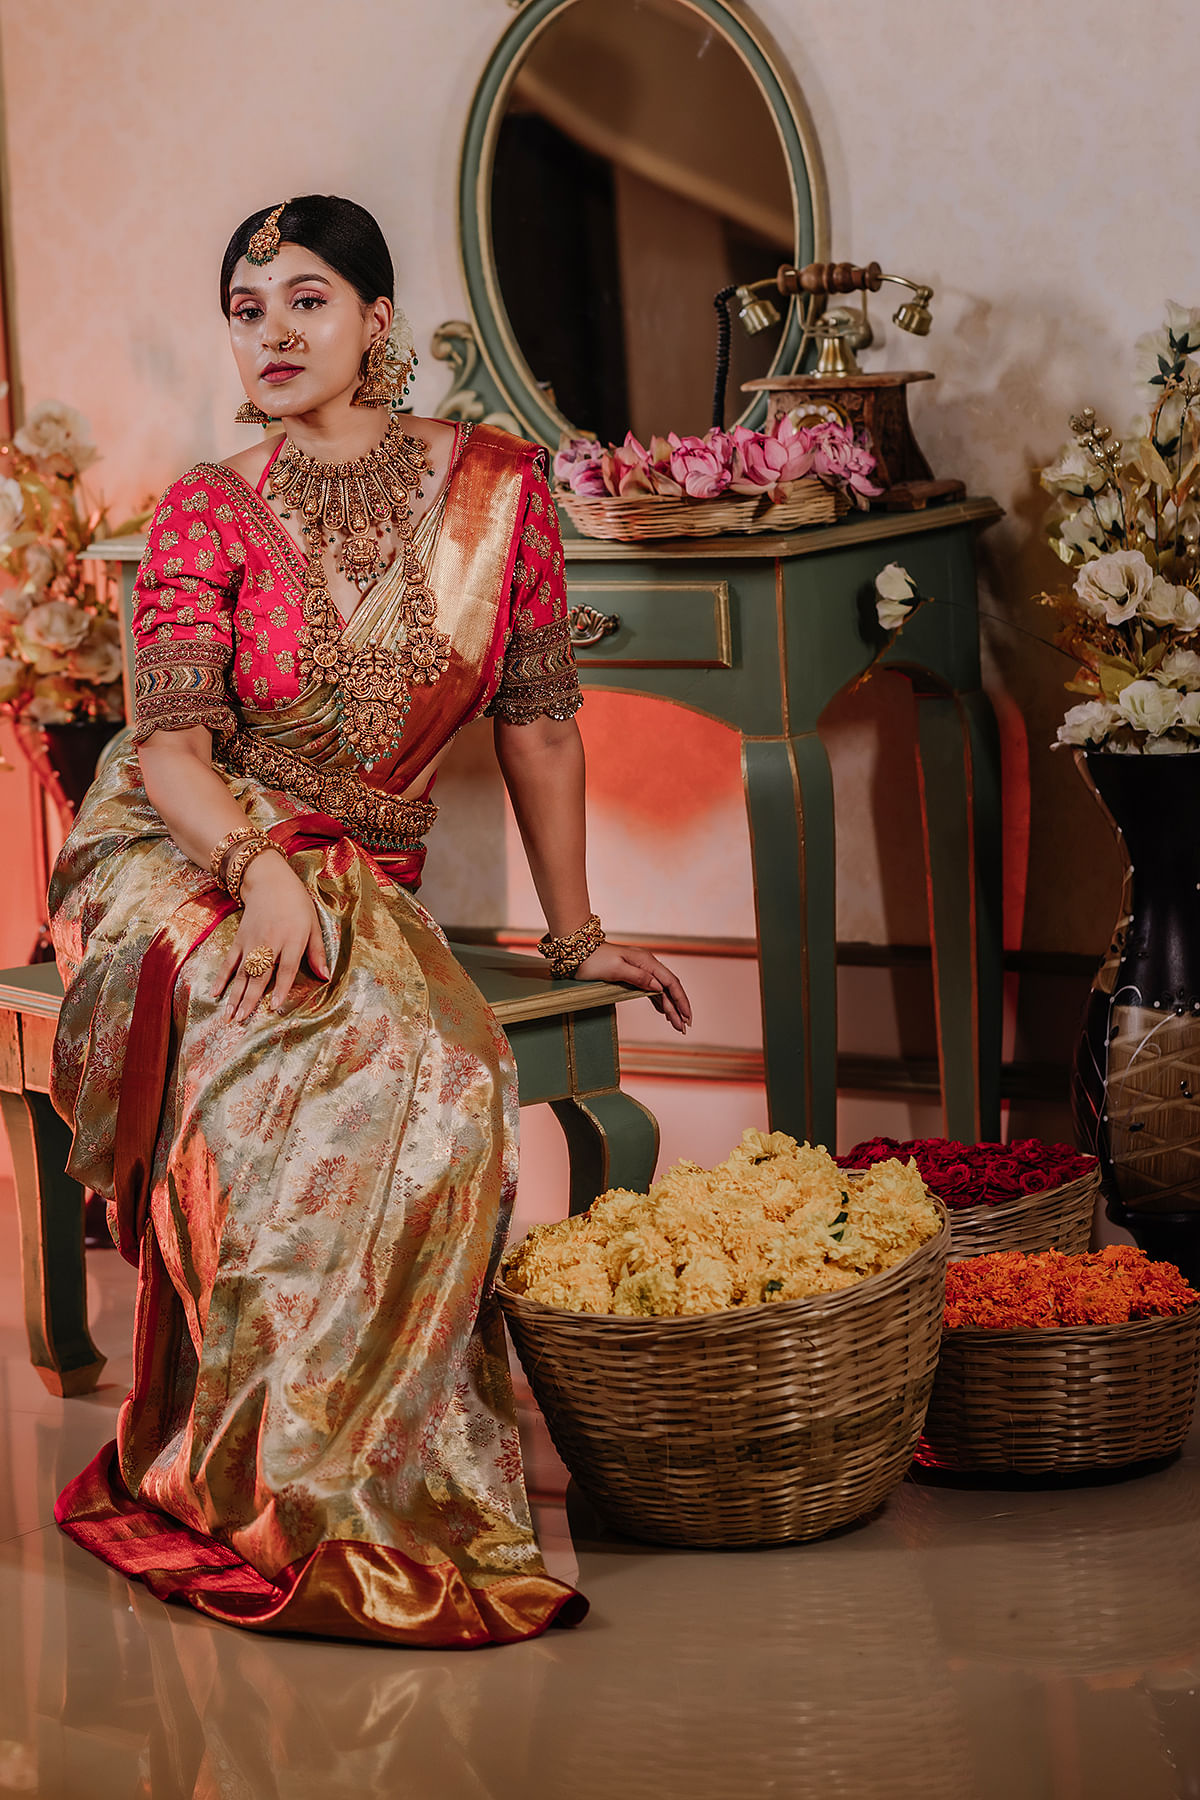 Shela & Pallu Shots From Maharashtrian Brides That We Loved! | WedMeGood